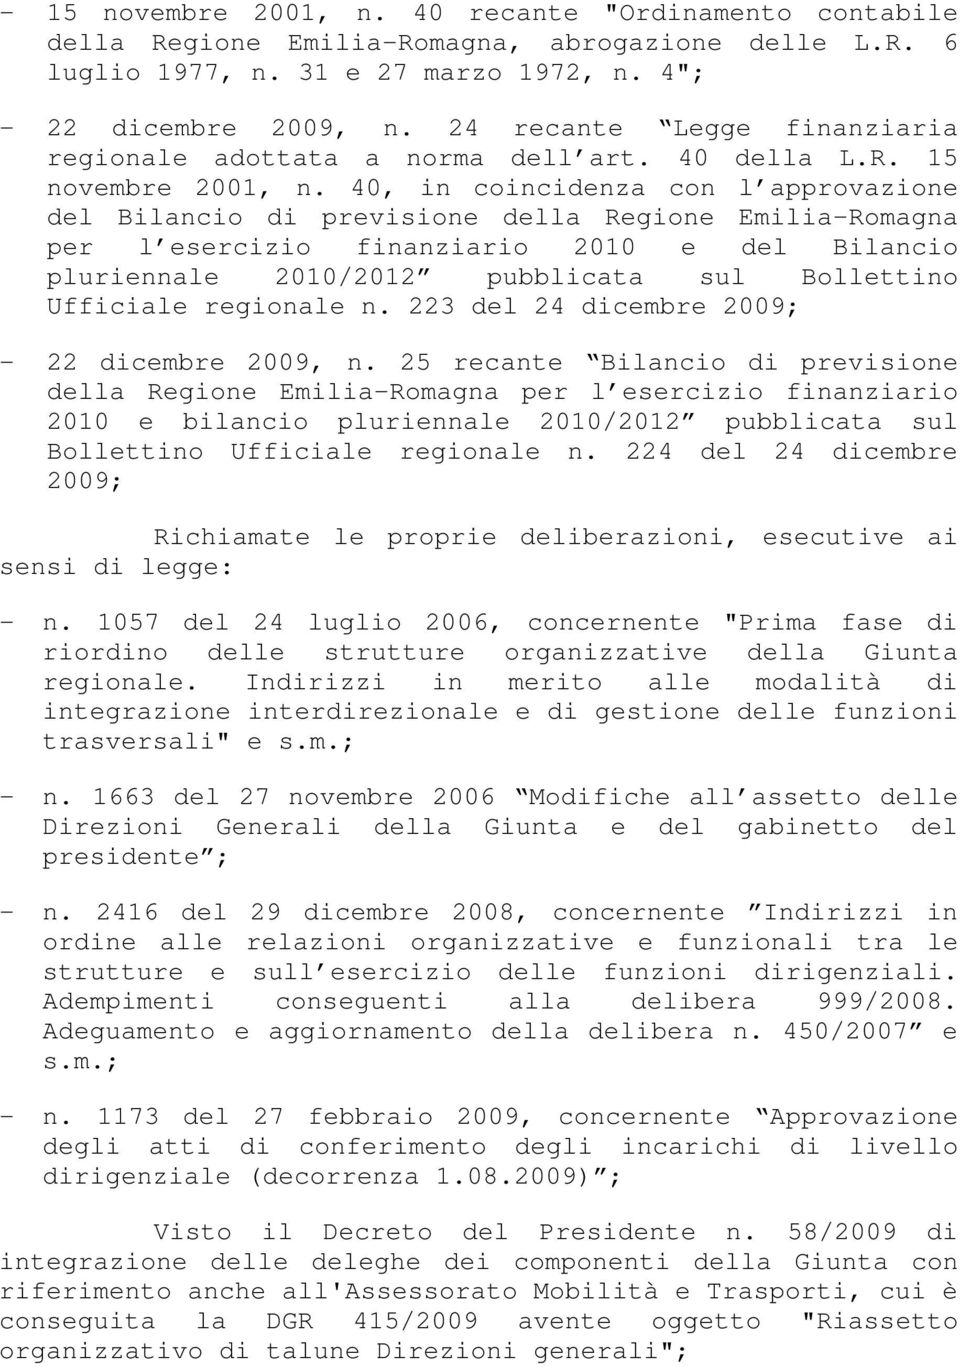 40, in coincidenza con l approvazione del Bilancio di previsione della Regione Emilia-Romagna per l esercizio finanziario 2010 e del Bilancio pluriennale 2010/2012 pubblicata sul Bollettino Ufficiale